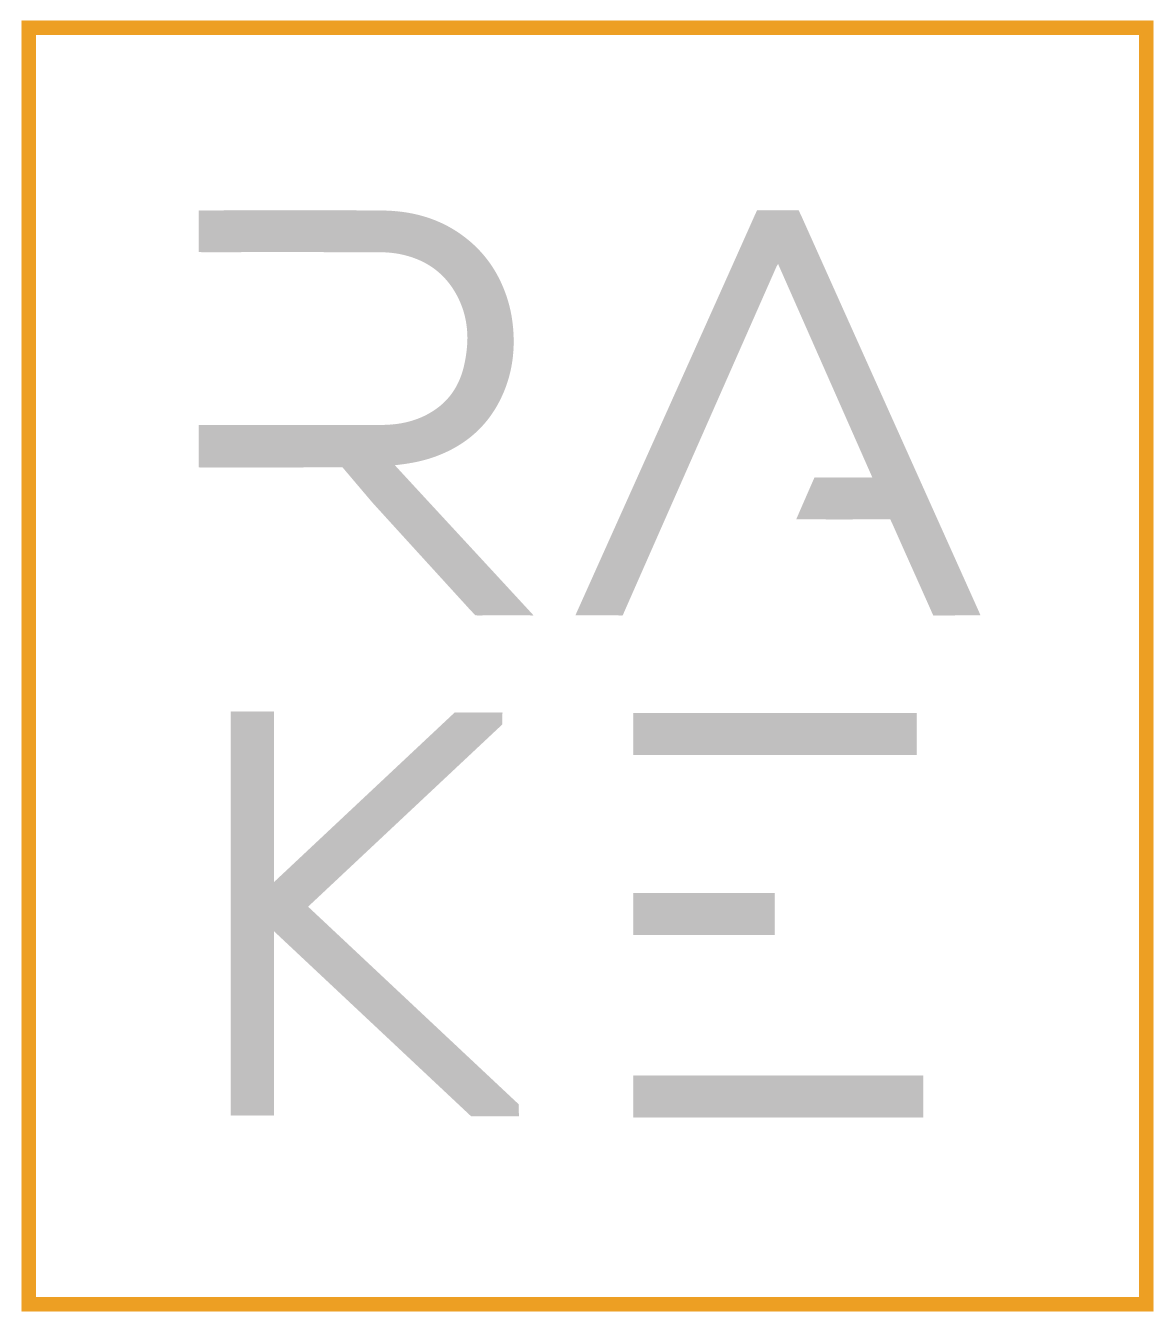 Rake Development